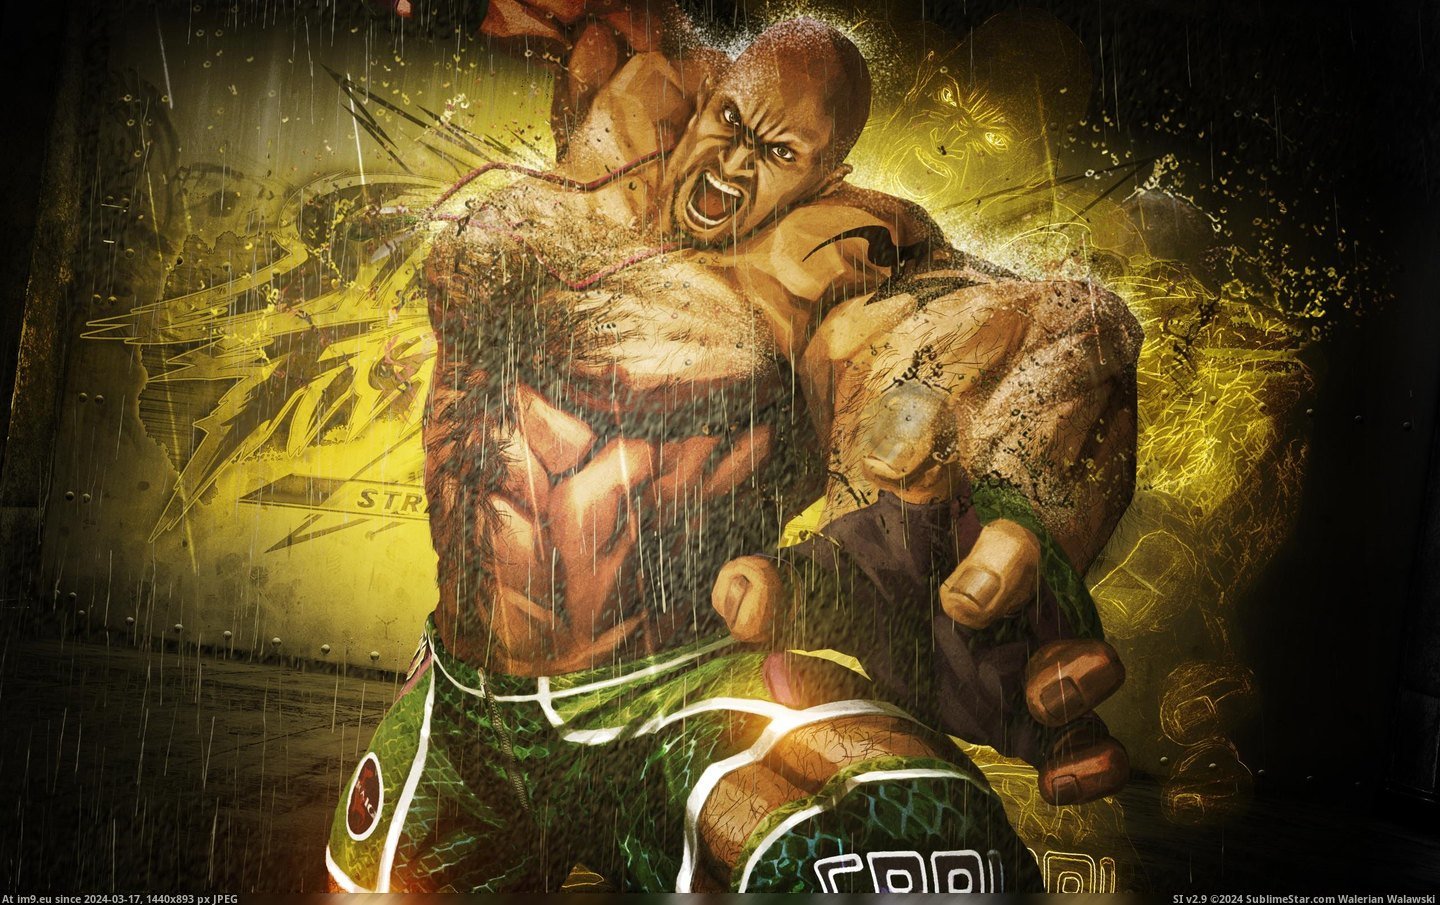 #Wallpaper #Wide #Marduk #Tekken #Craig Craig Marduk In Tekken Wide HD Wallpaper Pic. (Bild von album Unique HD Wallpapers))